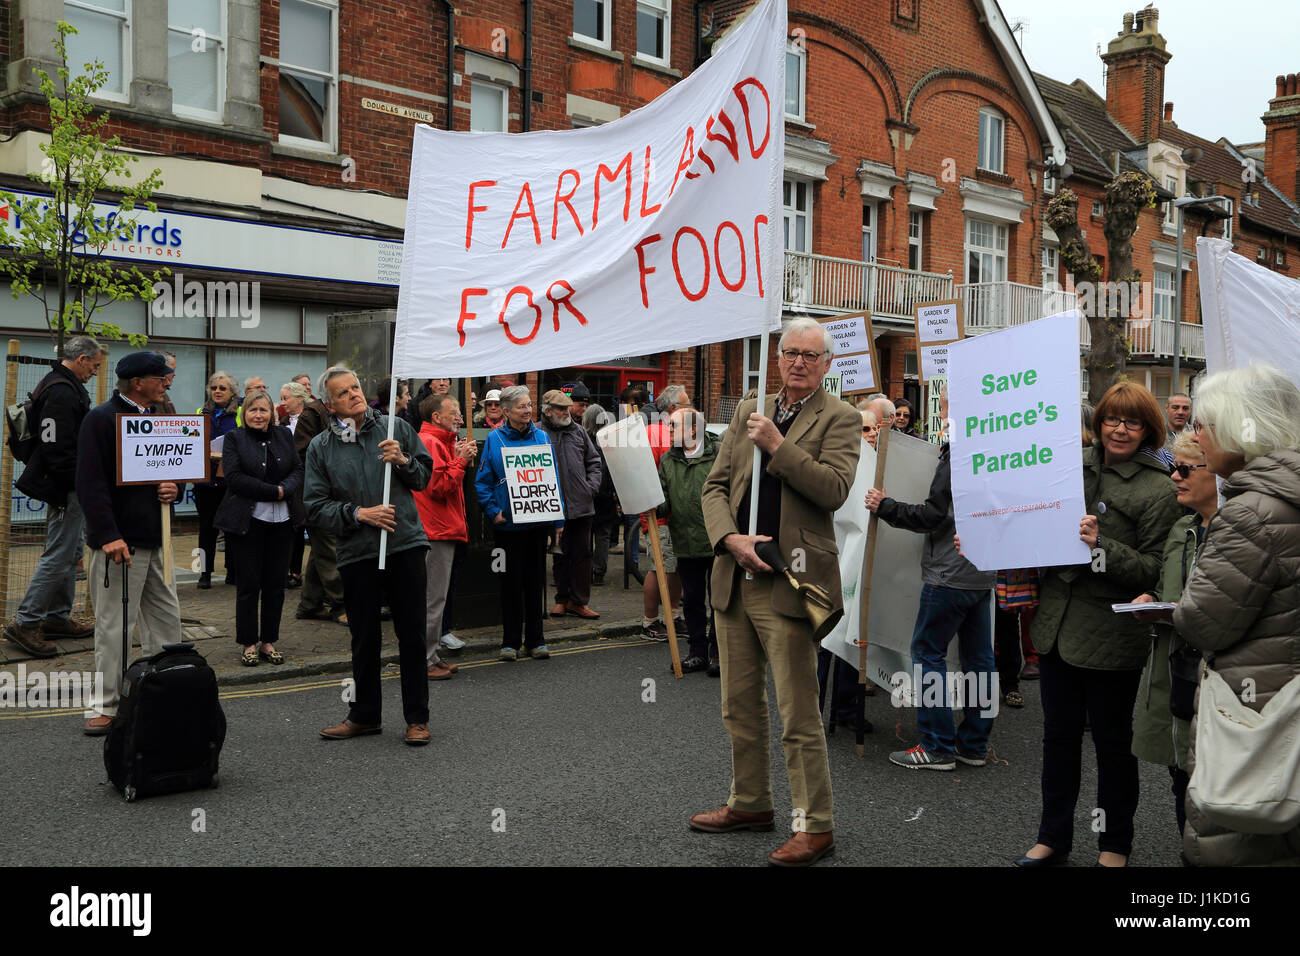 Protestation contre le développement non durable dans la région de shepway, Hythe, dans le Kent, Angleterre Banque D'Images